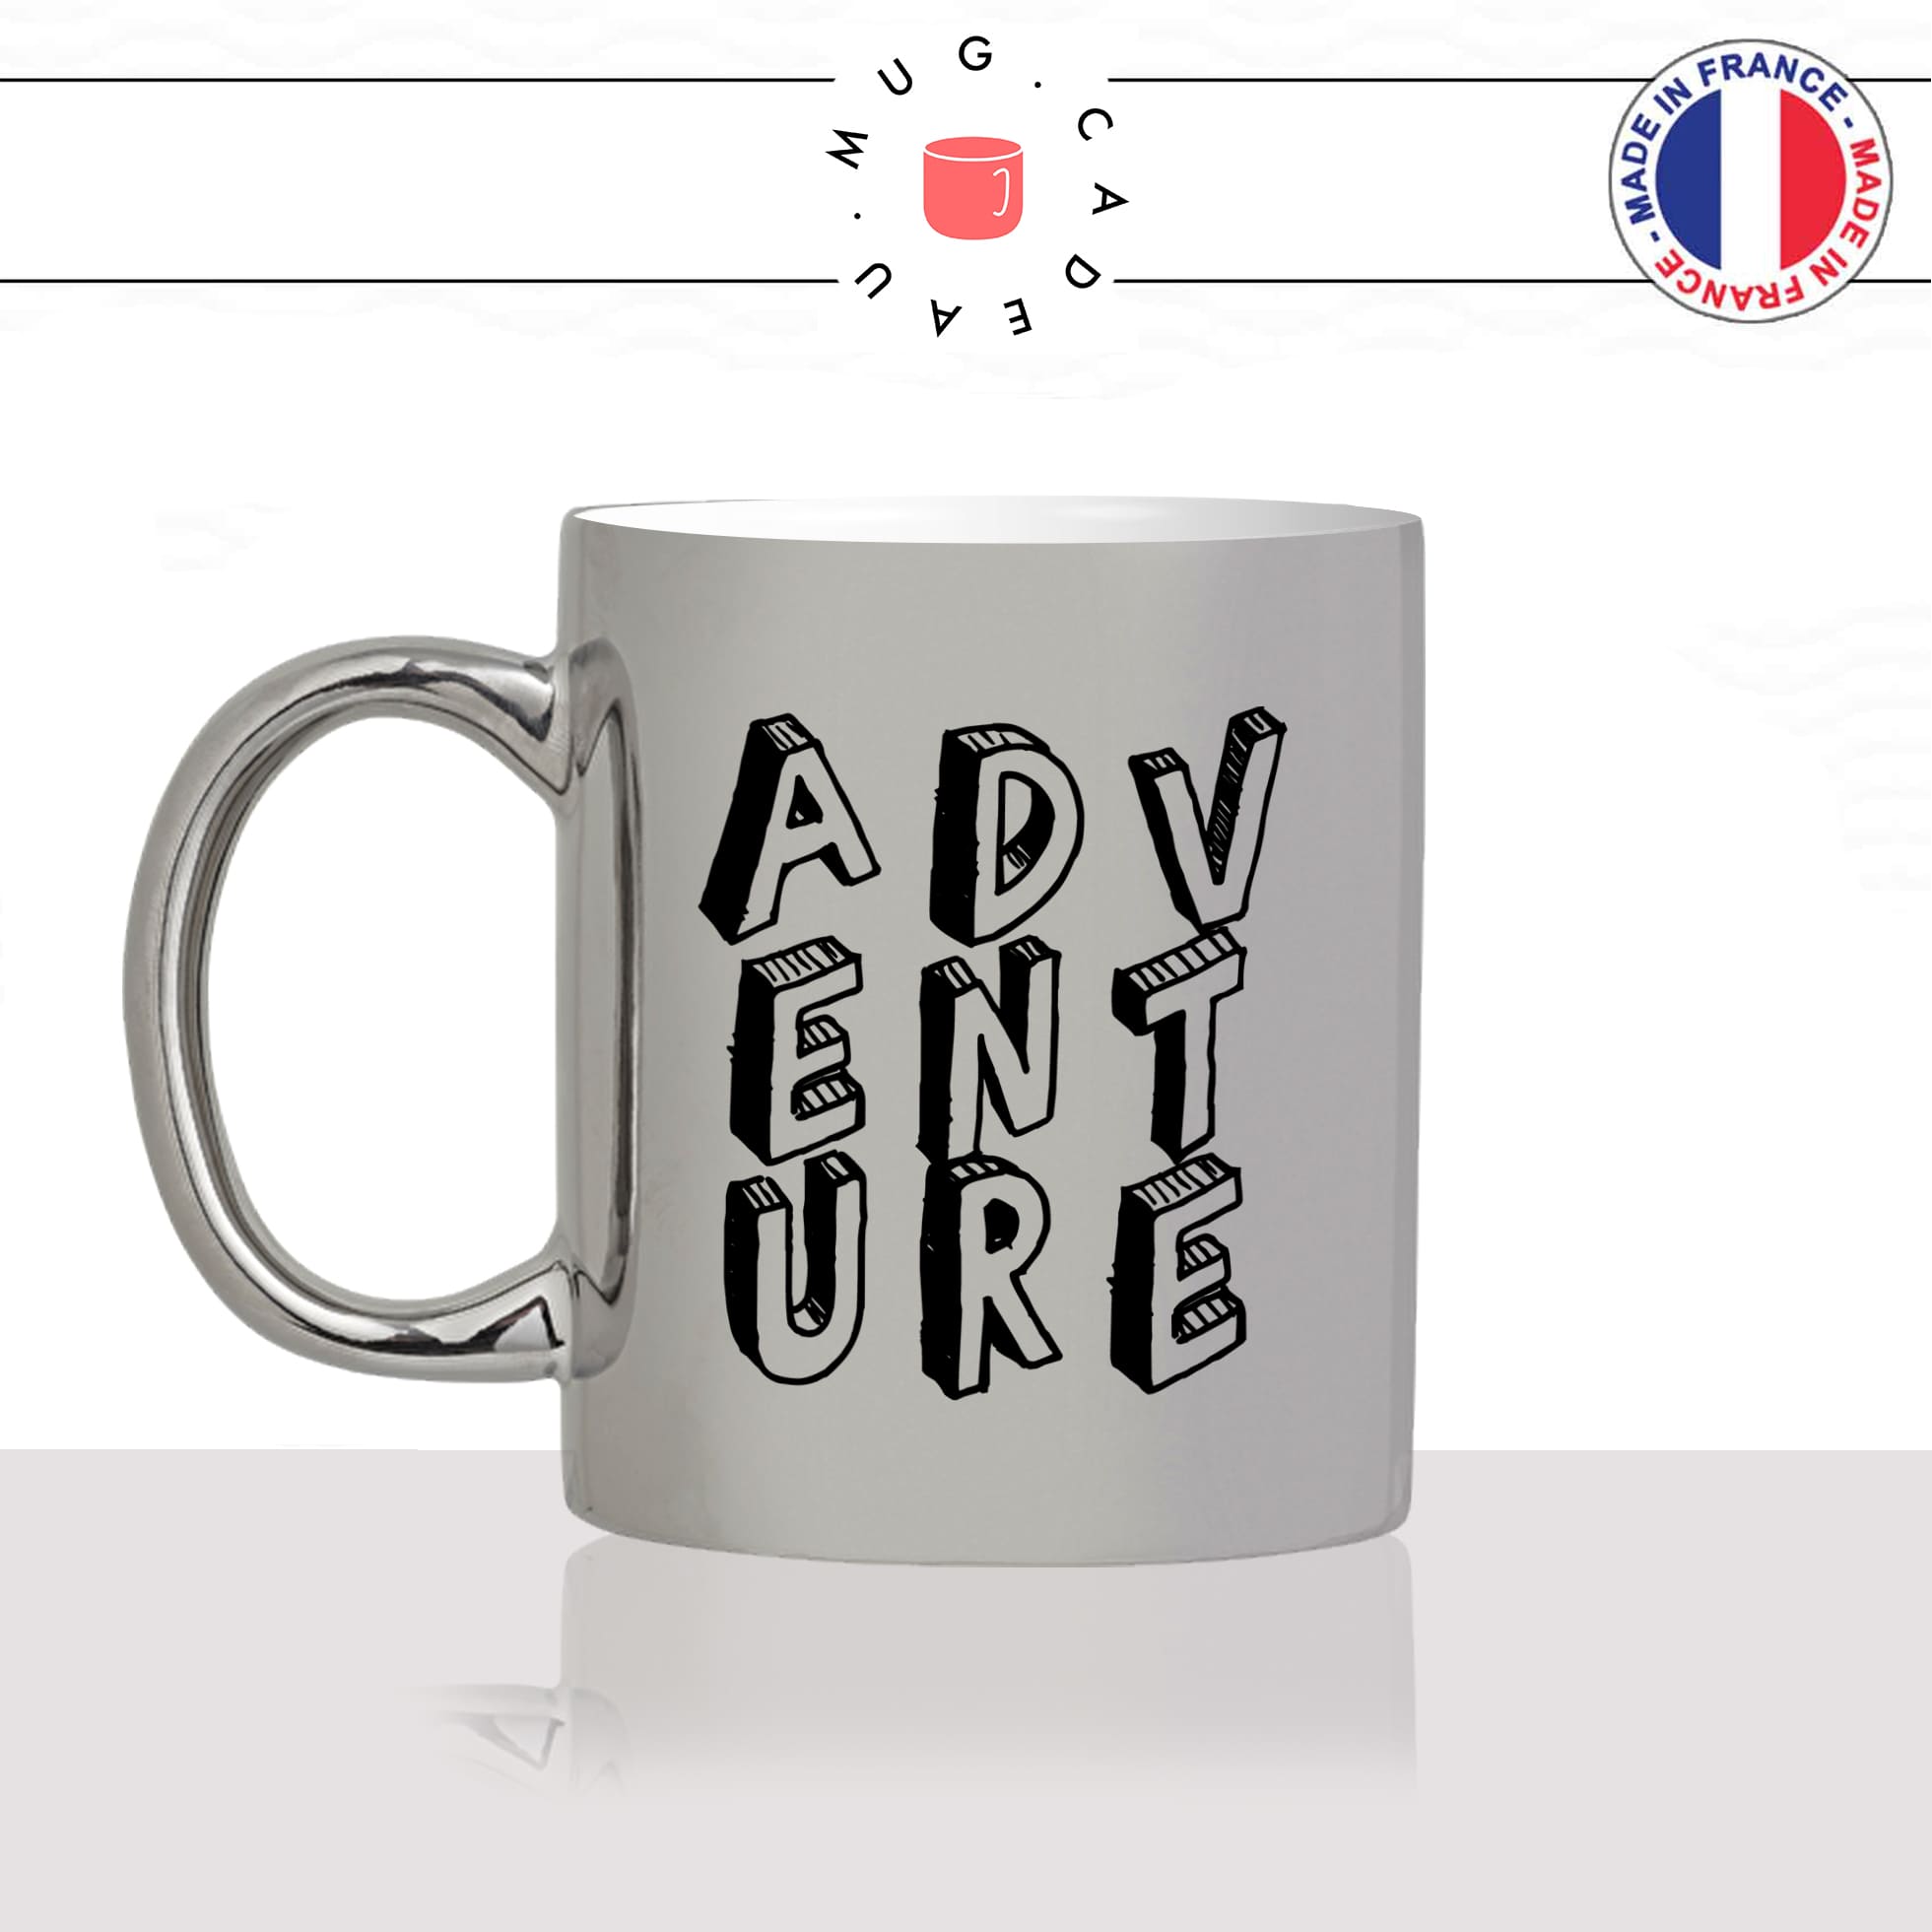 mug-tasse-argent-argenté-silver-adventure-aventure-anglais-voyage-travel-free-avion-vacance-influenceur-humour-idée-cadeau-fun-cool-café-thé